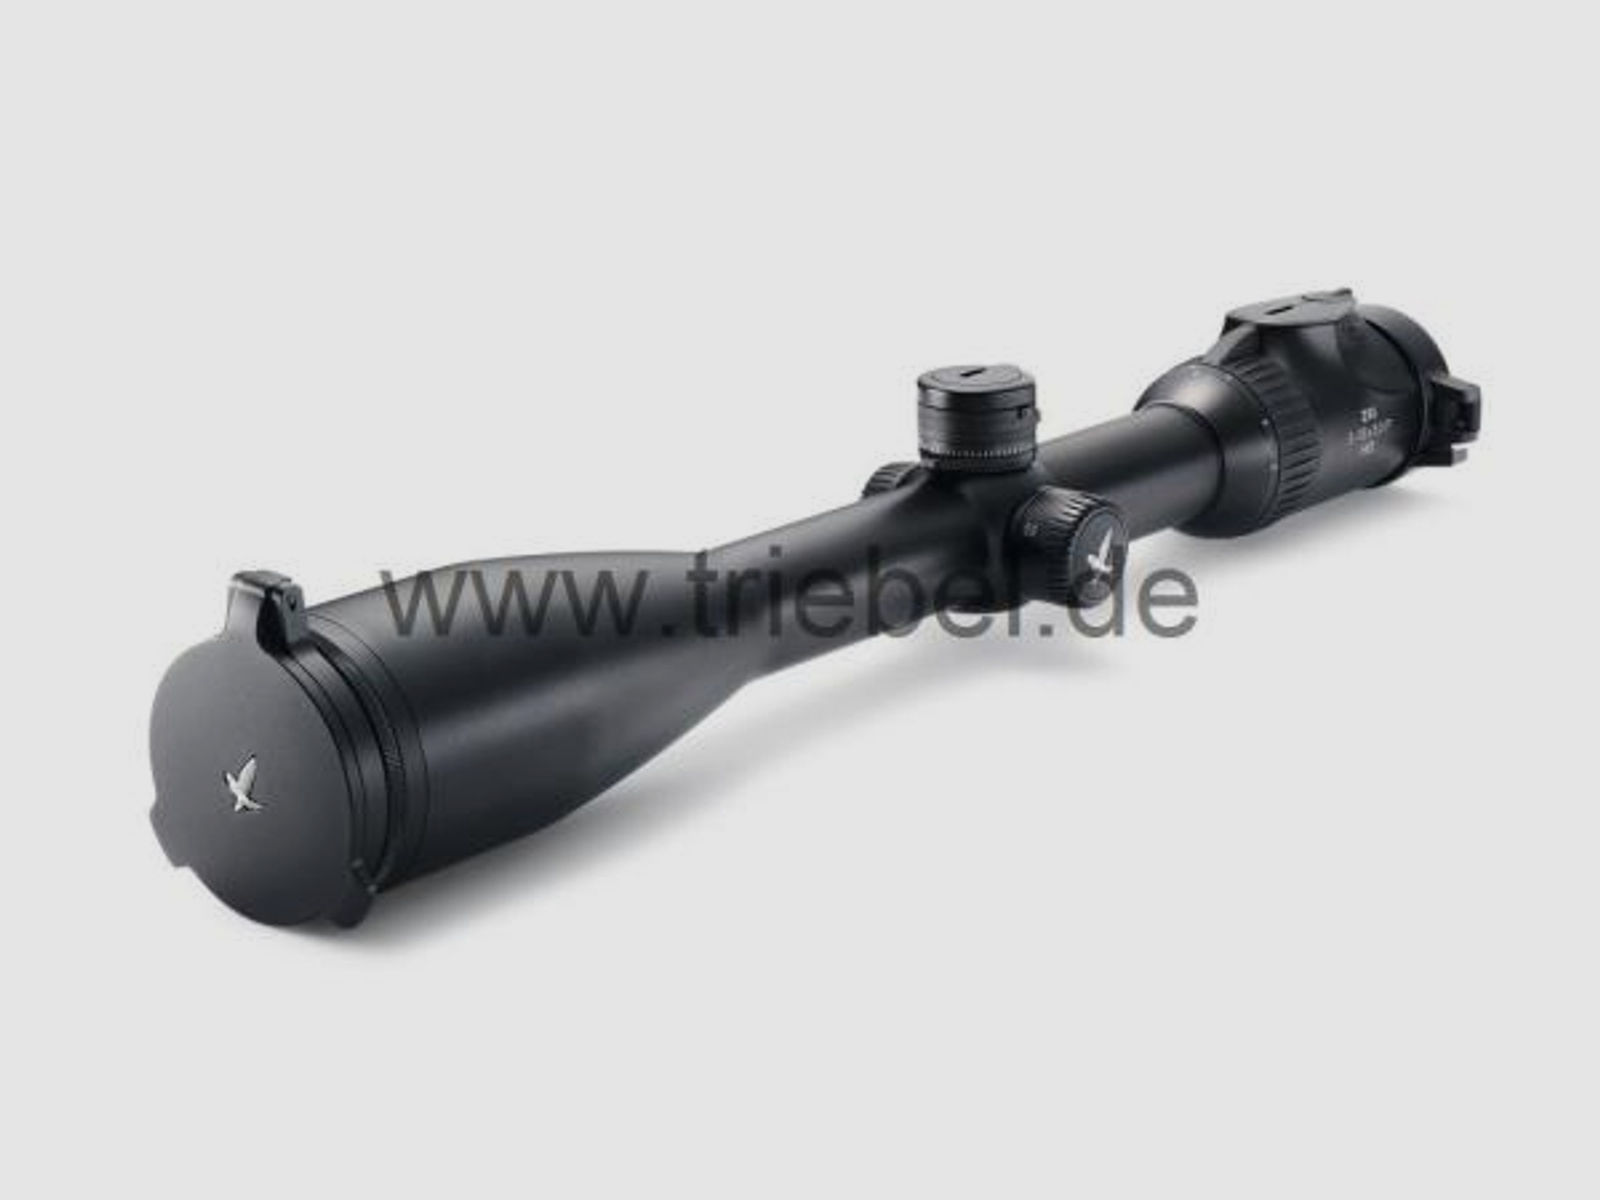 SWAROVSKI Zubehör für Zielfernrohre Objektivdeckel 44 mm SLP-O-44 f. Z8i, Z6(i), Z5, Z3, X5(i)